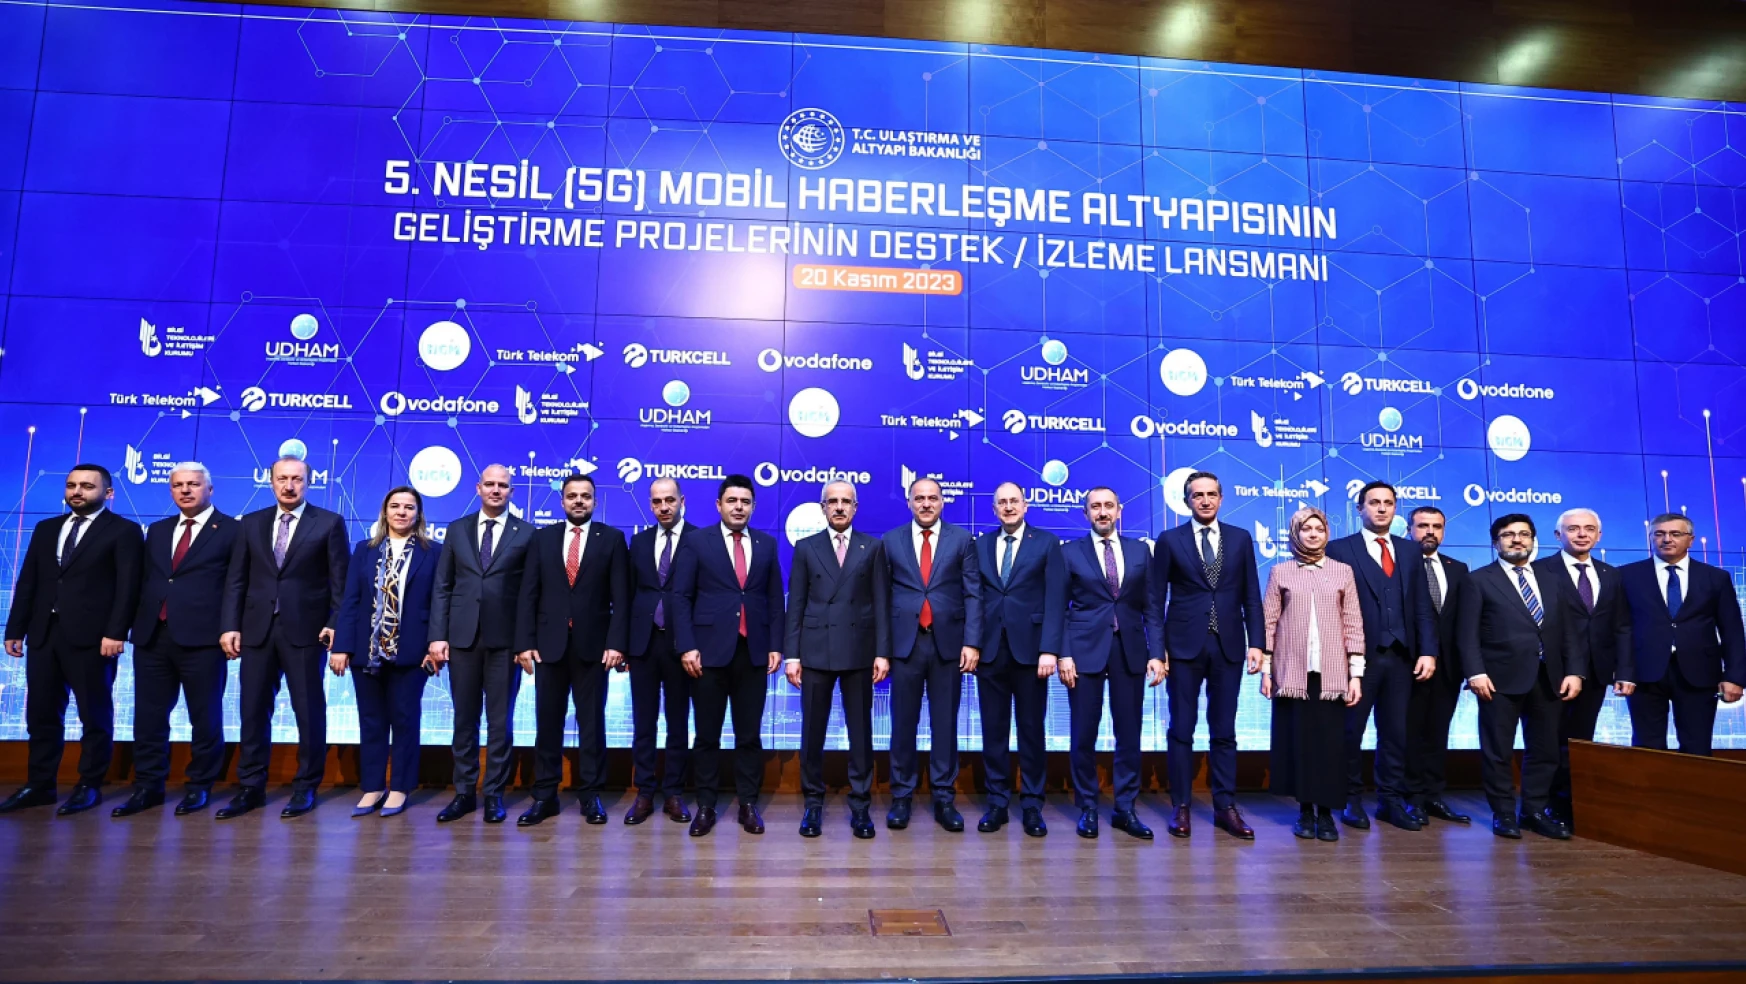 Ulaştırma Ve Altyapı Bakanı Abdulkadir Uraloğlu, 5. Nesil (5g) Mobil Haberleşme Altyapısının Geliştirme Projeleri'nin Lansman Töreni'ne Katıldı